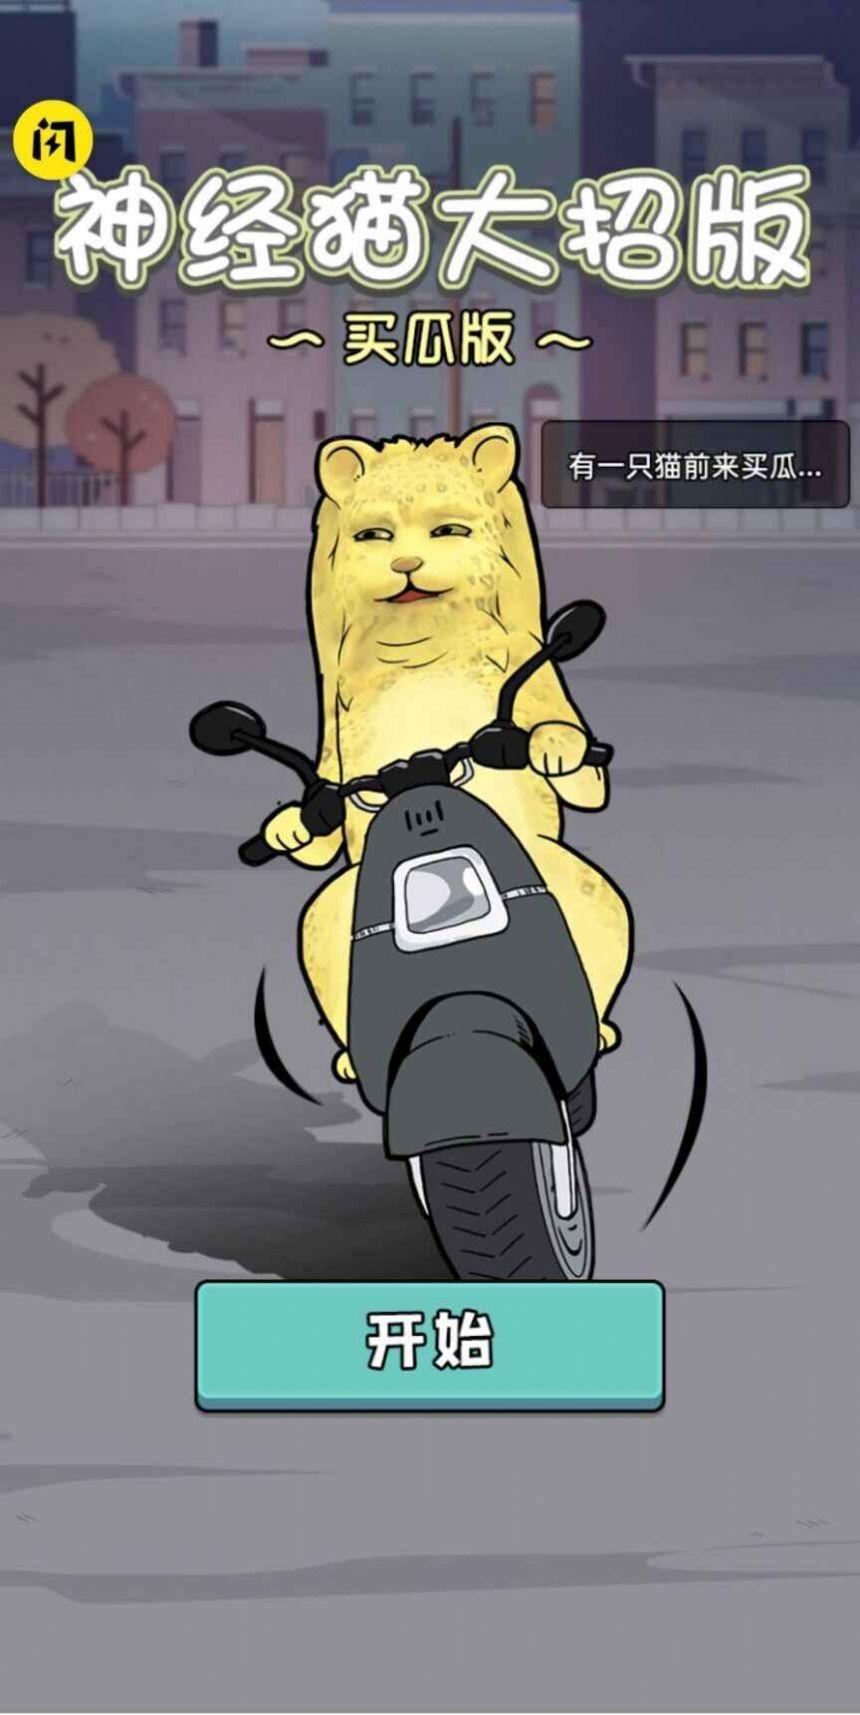 神经猫大招免广告游戏下载安装-神经猫大招免广告最新免费版下载